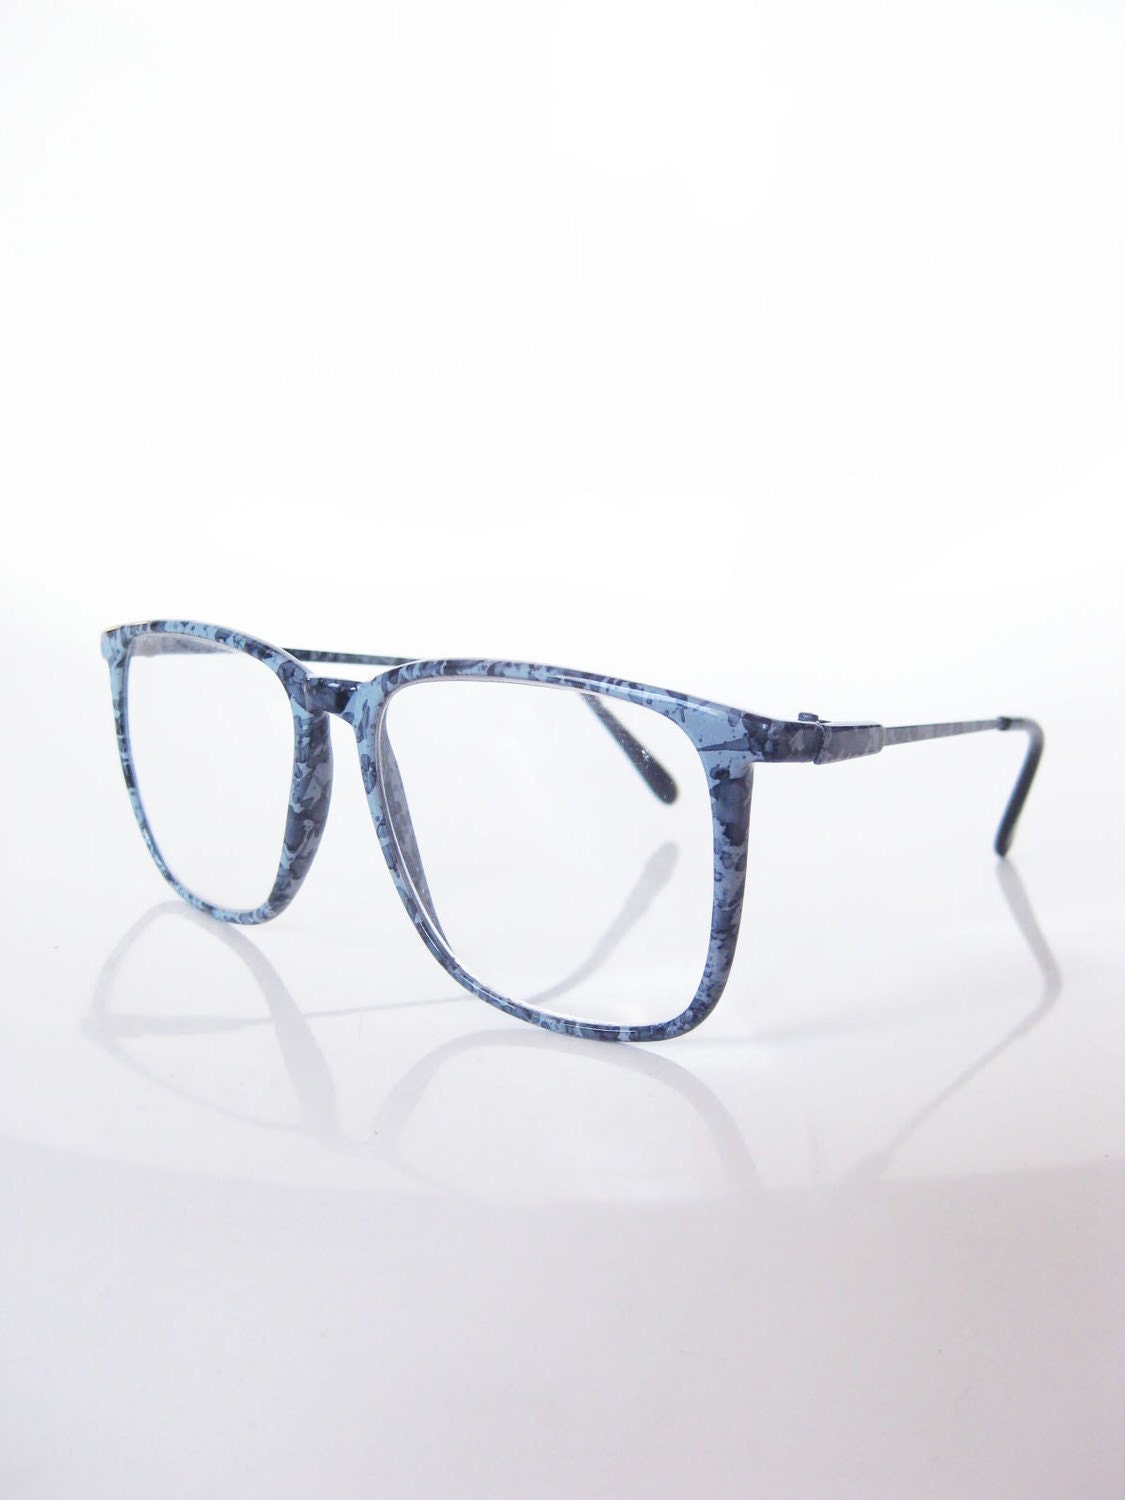 Vintage Oversized Denim Blue Glasses Optical Frames Eyeglasses